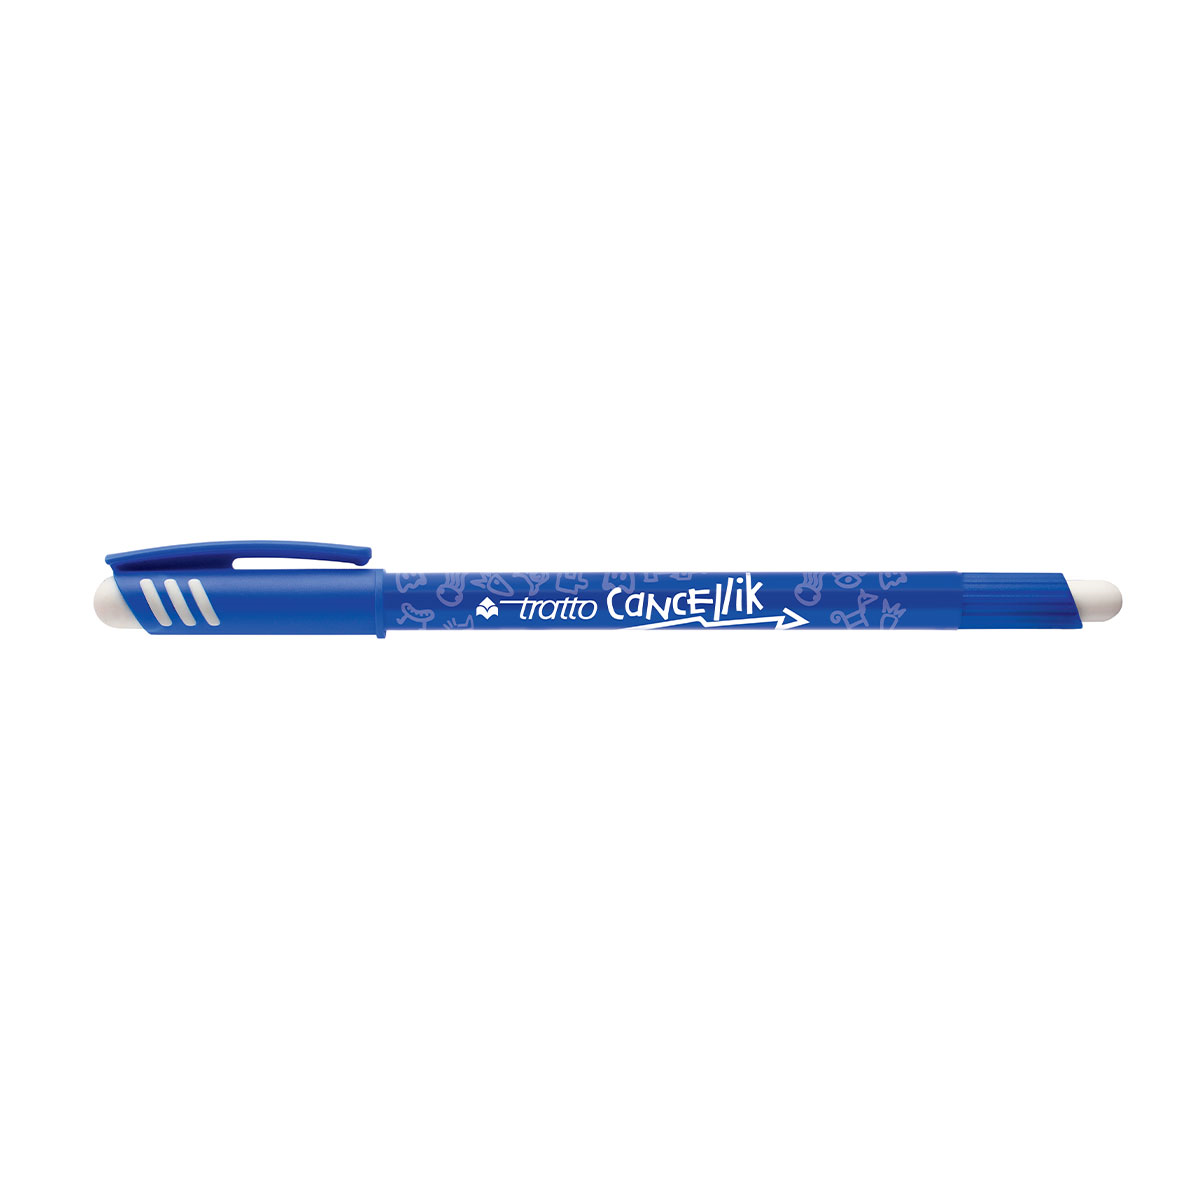 2 оскуд вать гел вая ручка. Ручка tratto Cancellik. Ручка шариковая синяя tratto 1 поворот 1мм. Ручка стирашка шариковая. Ручка шариковая tratto Cancellik "пиши-стирай" синяя 826101.